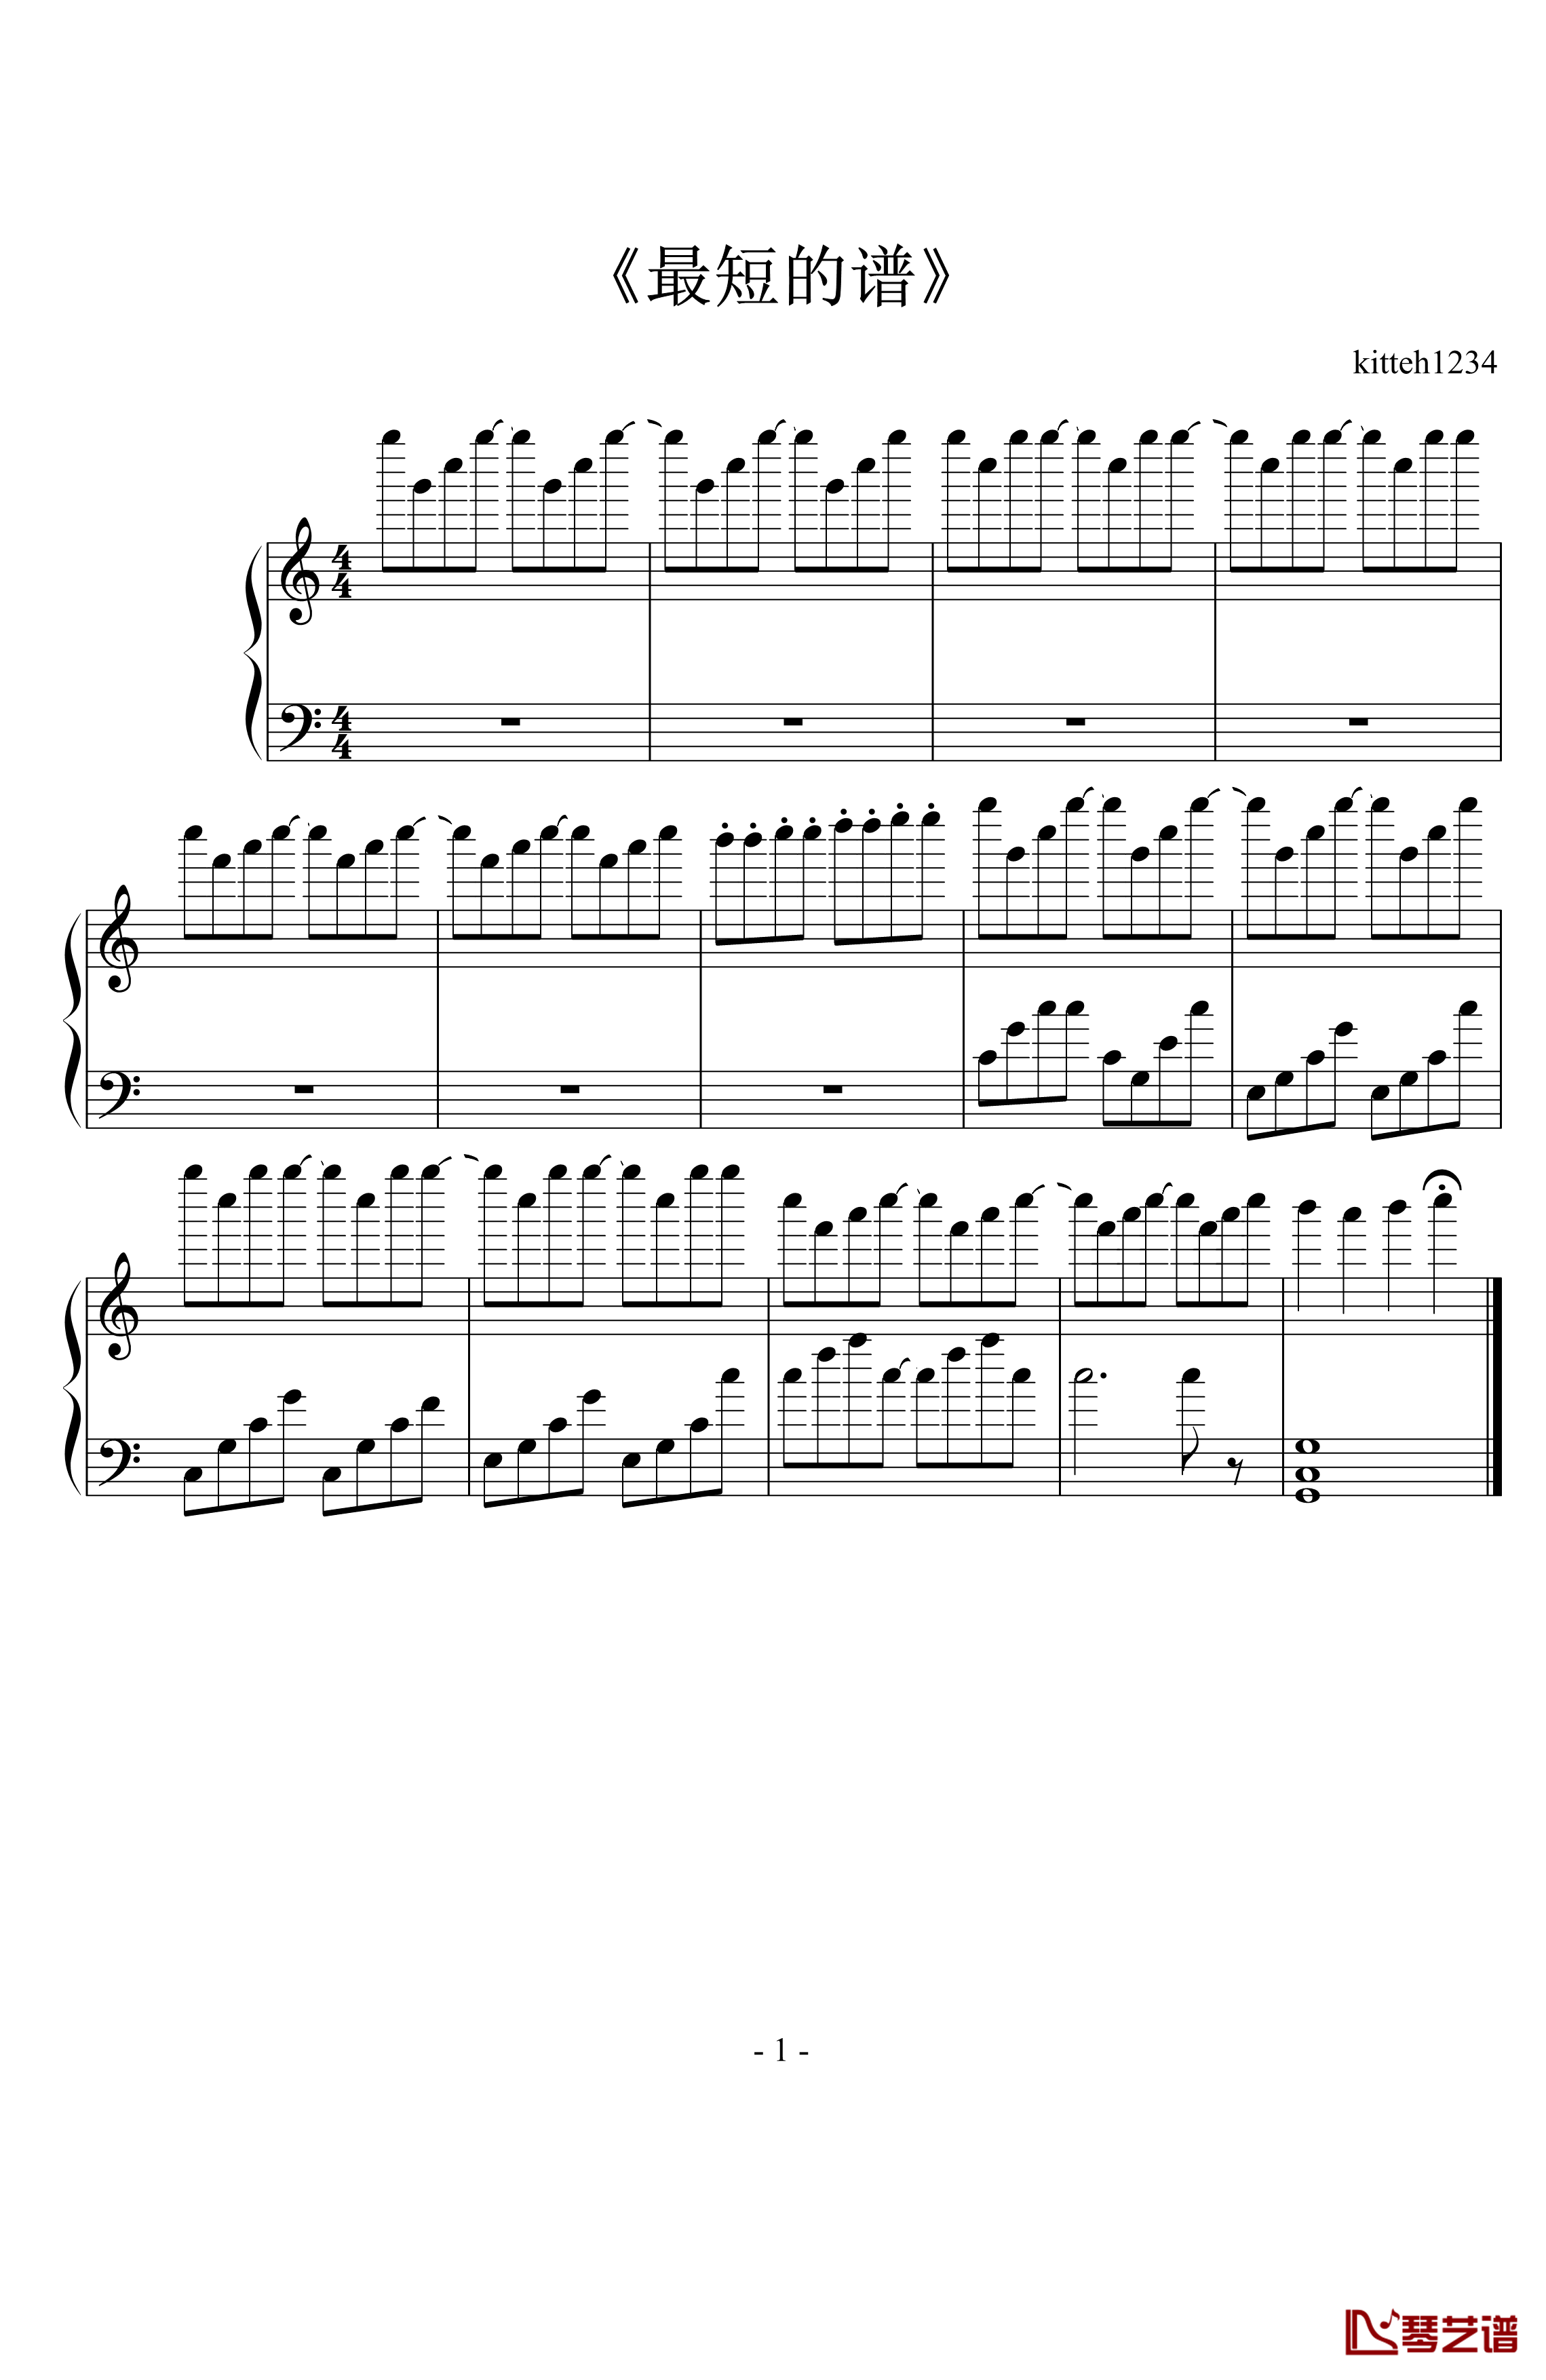 最短的谱钢琴谱-kitteh12341